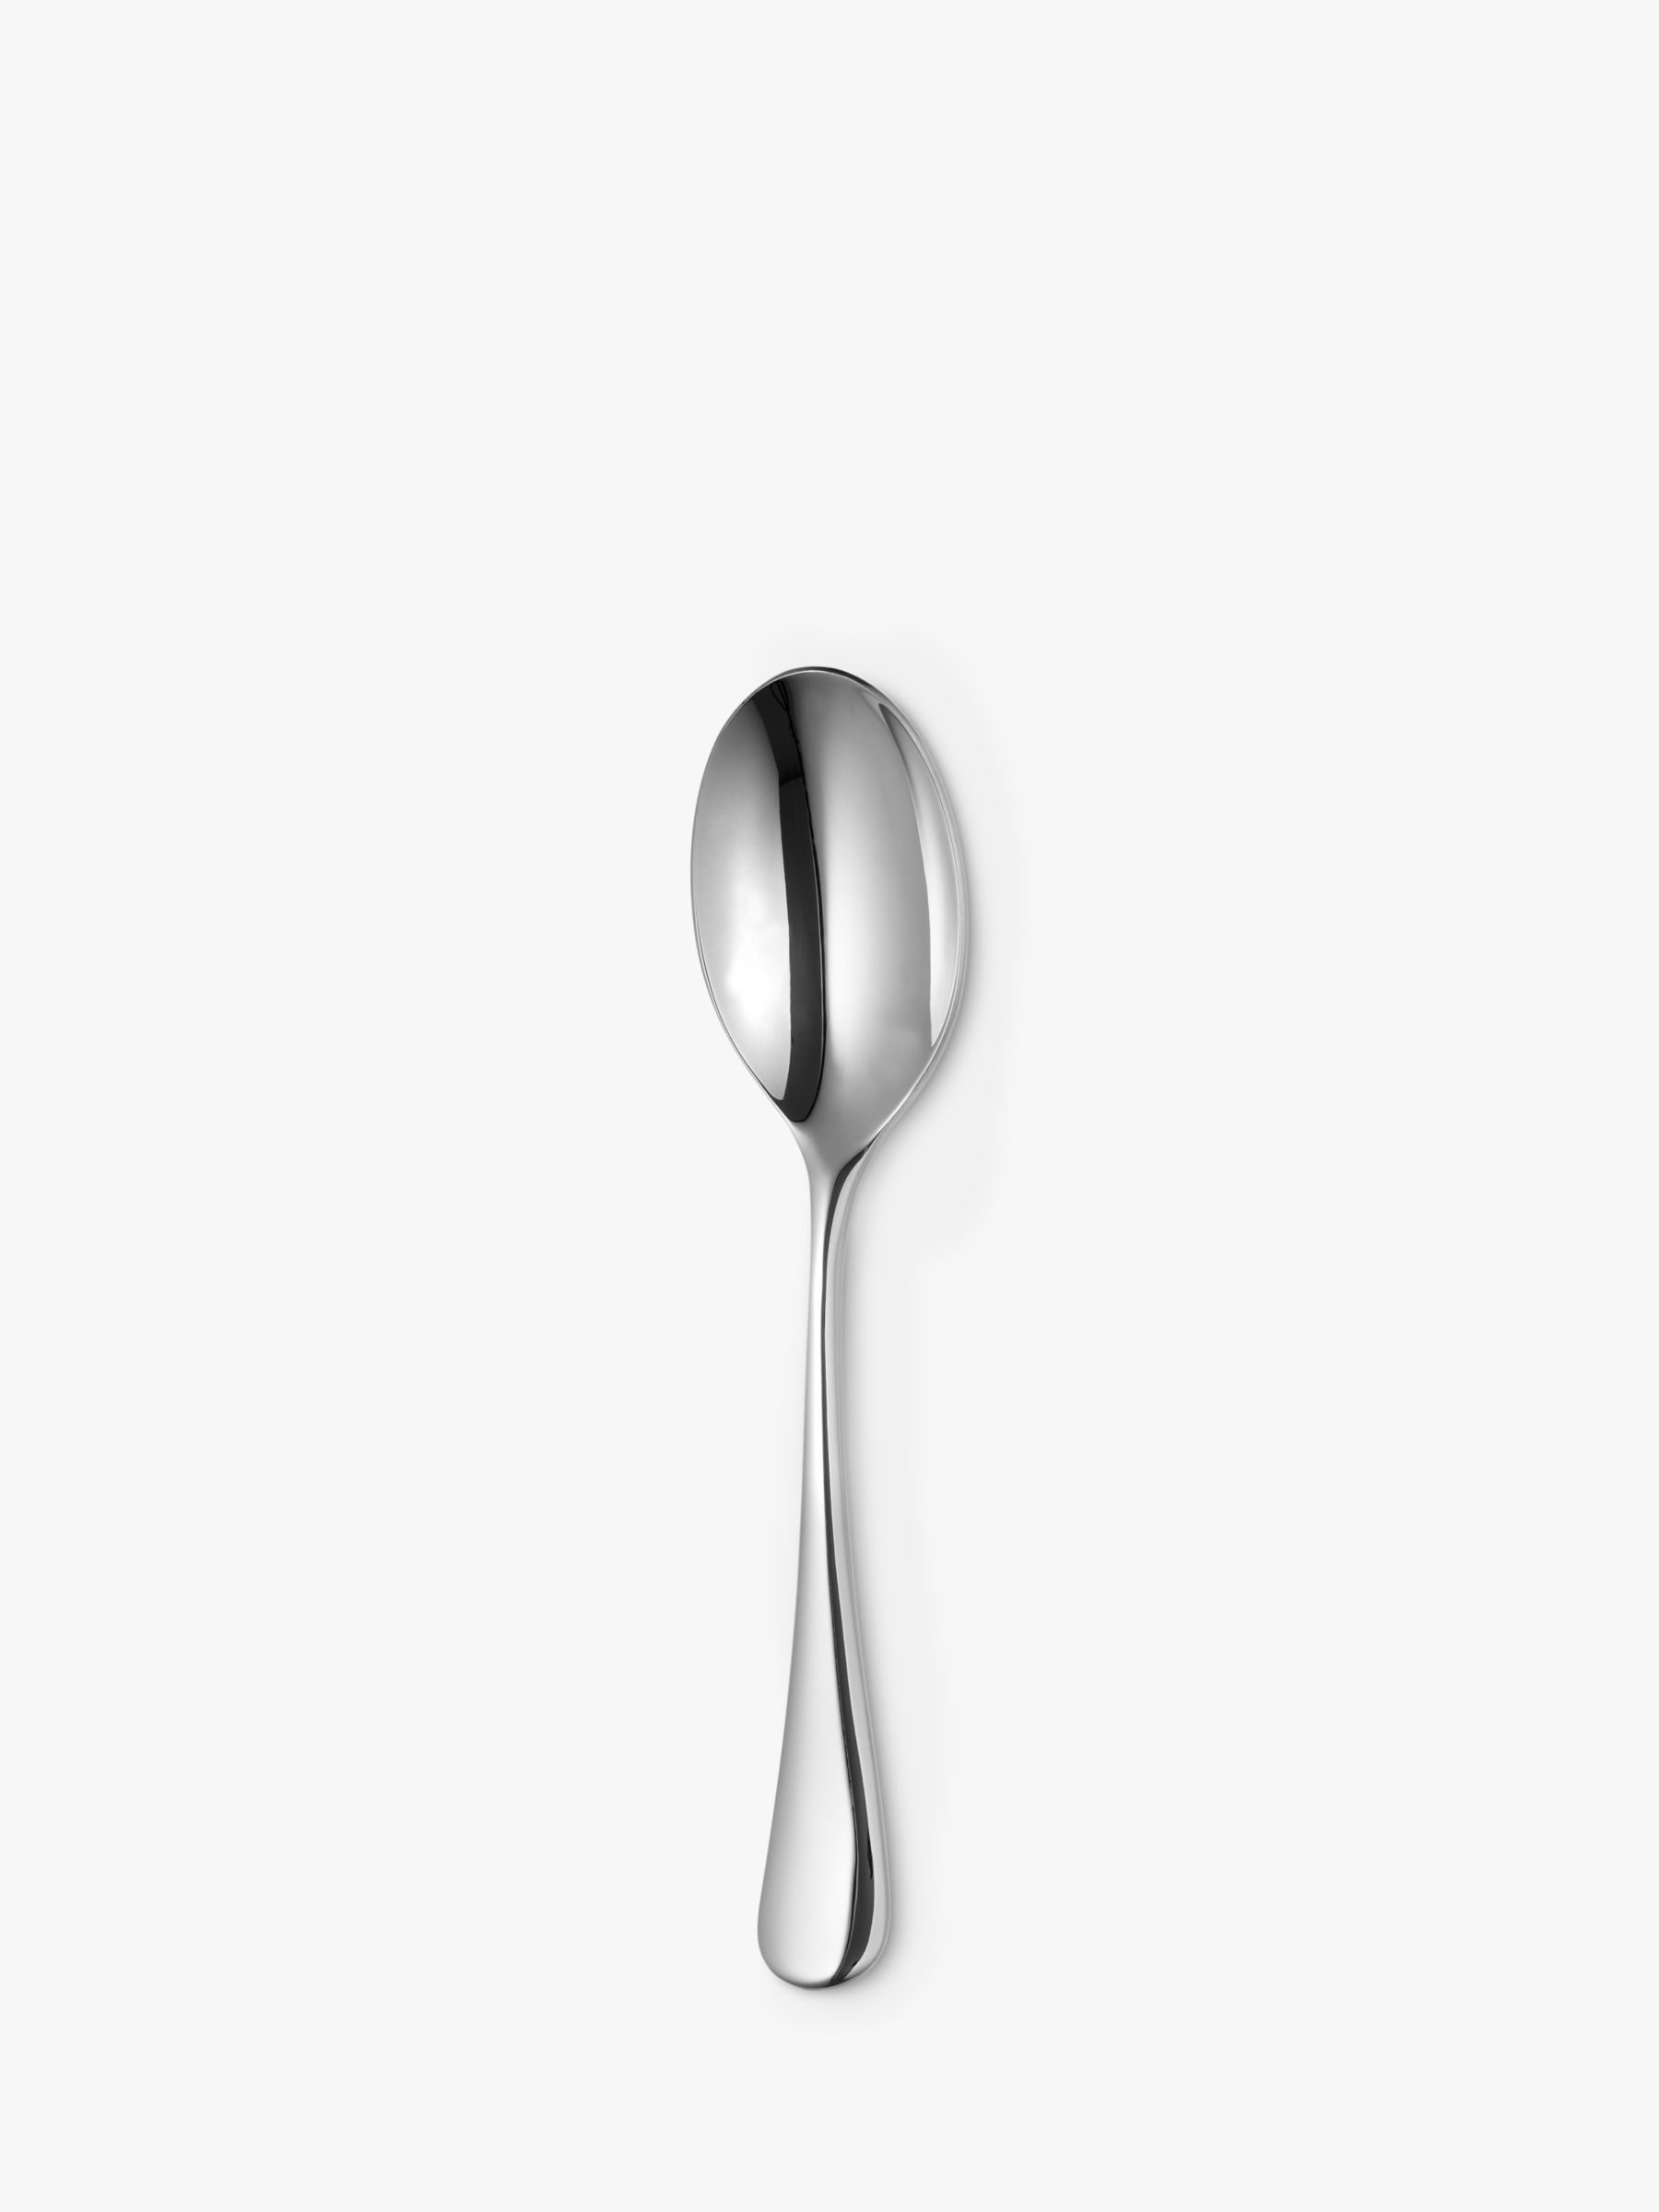 Radford Serving Spoon, Stainless Steel